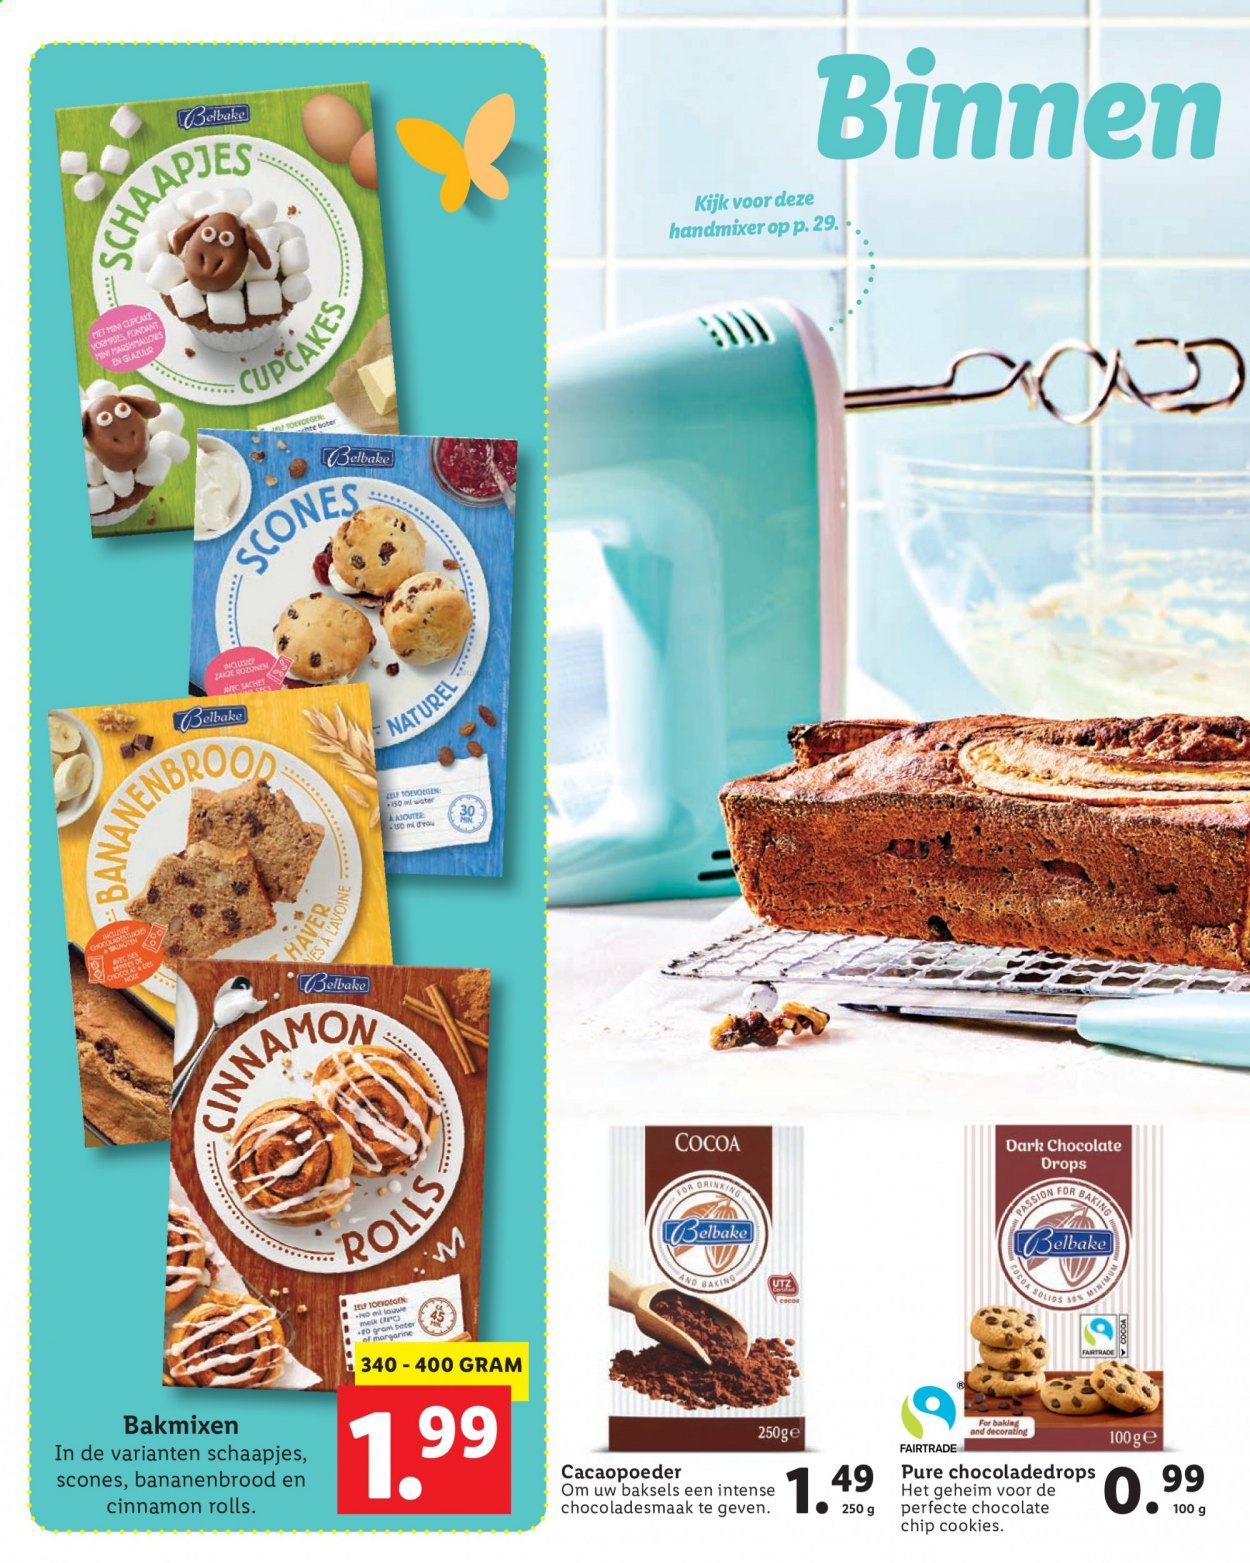 thumbnail - Lidl-aanbieding -  producten in de aanbieding - cupcakes, scones, melk, cookies, cacaopoeder, handmixer. Pagina 24.